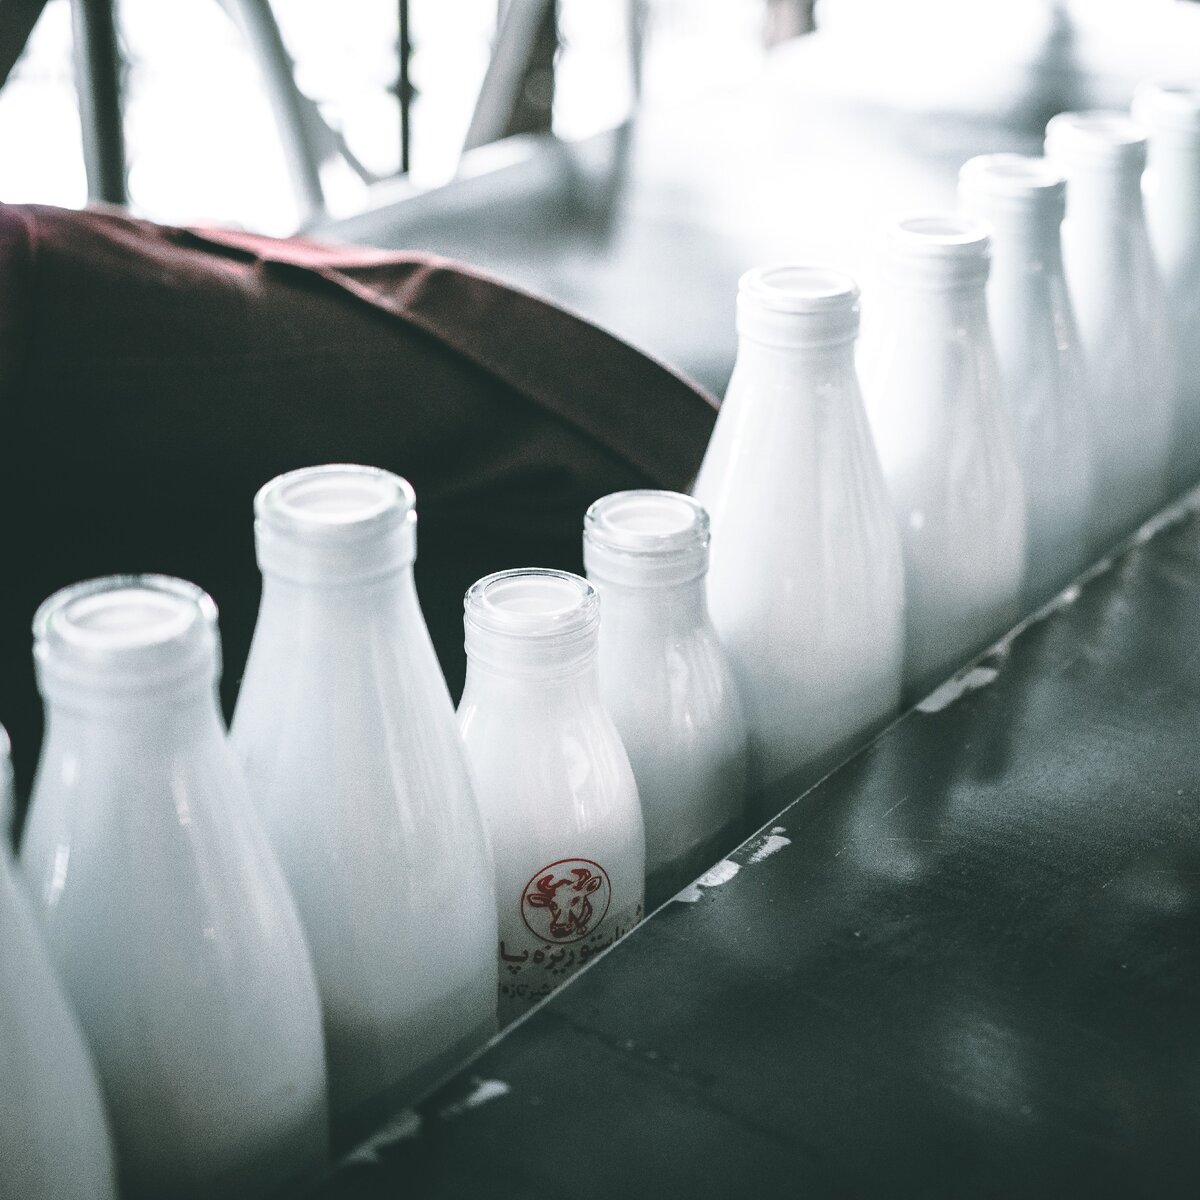 Отличаем натуральную молочную продукцию от подделки